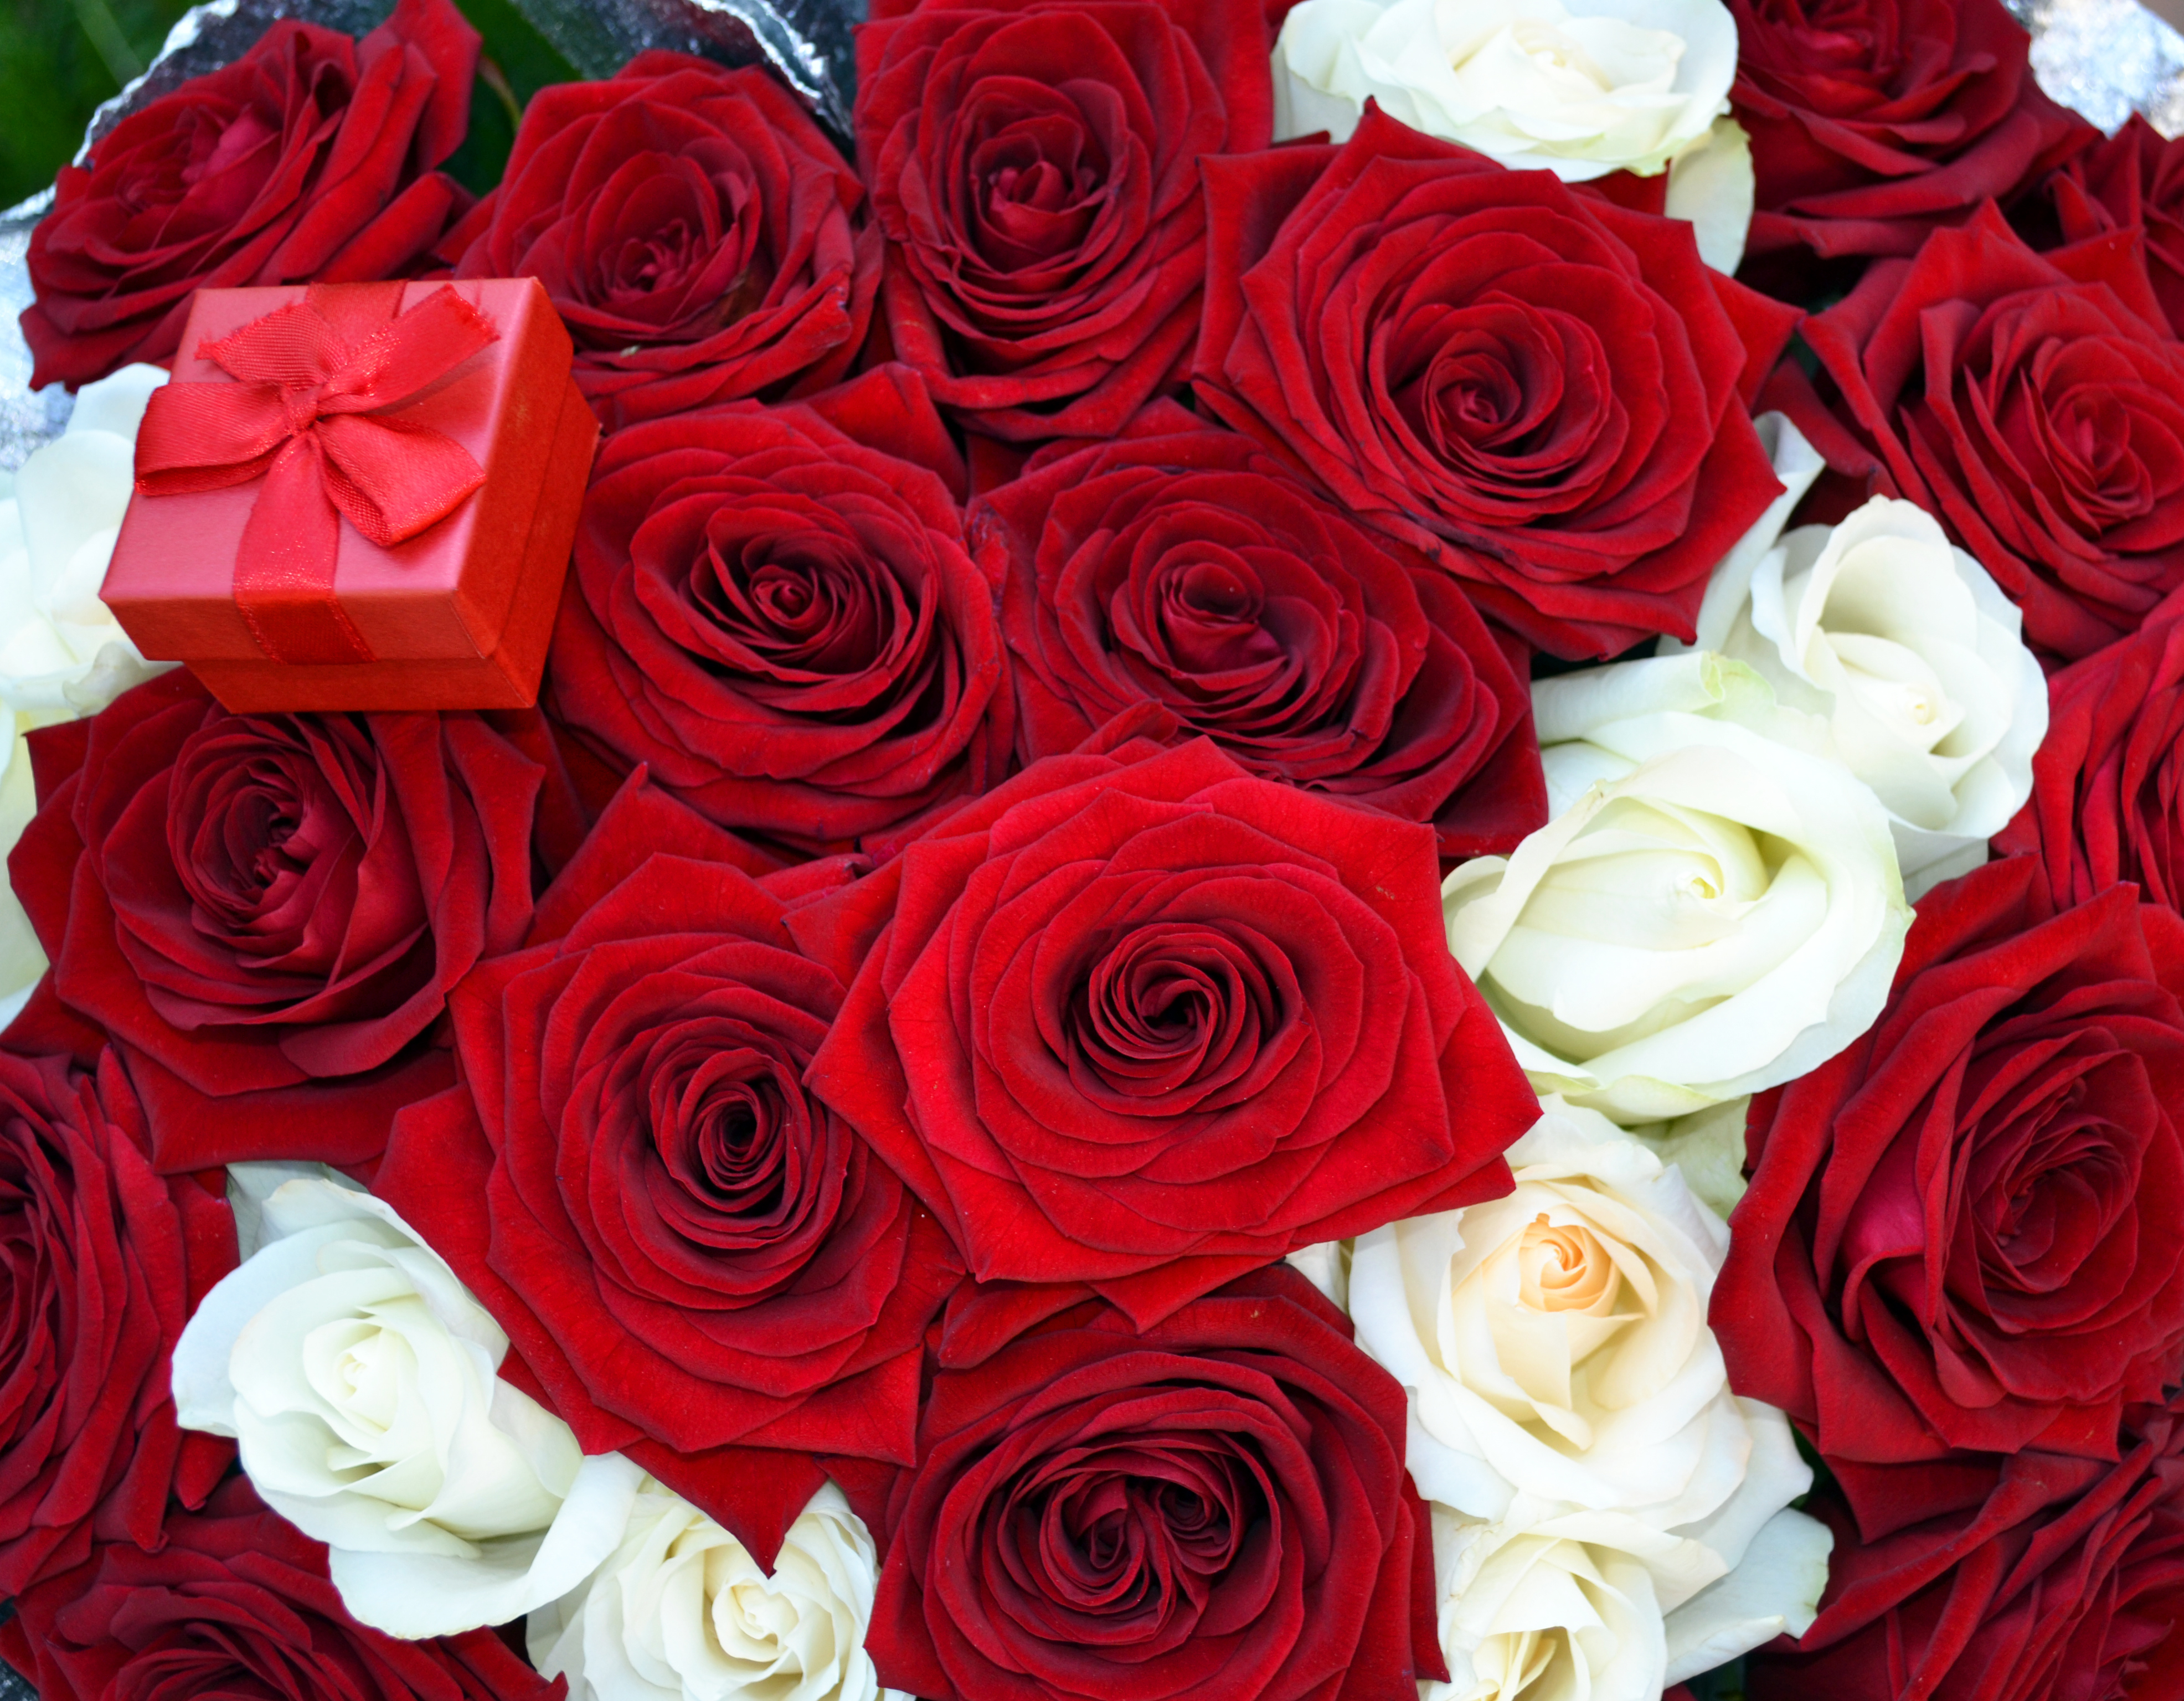 Фотки красивых роз. Красивый букет роз. Шикарный букет роз. Красивый букет красных роз.